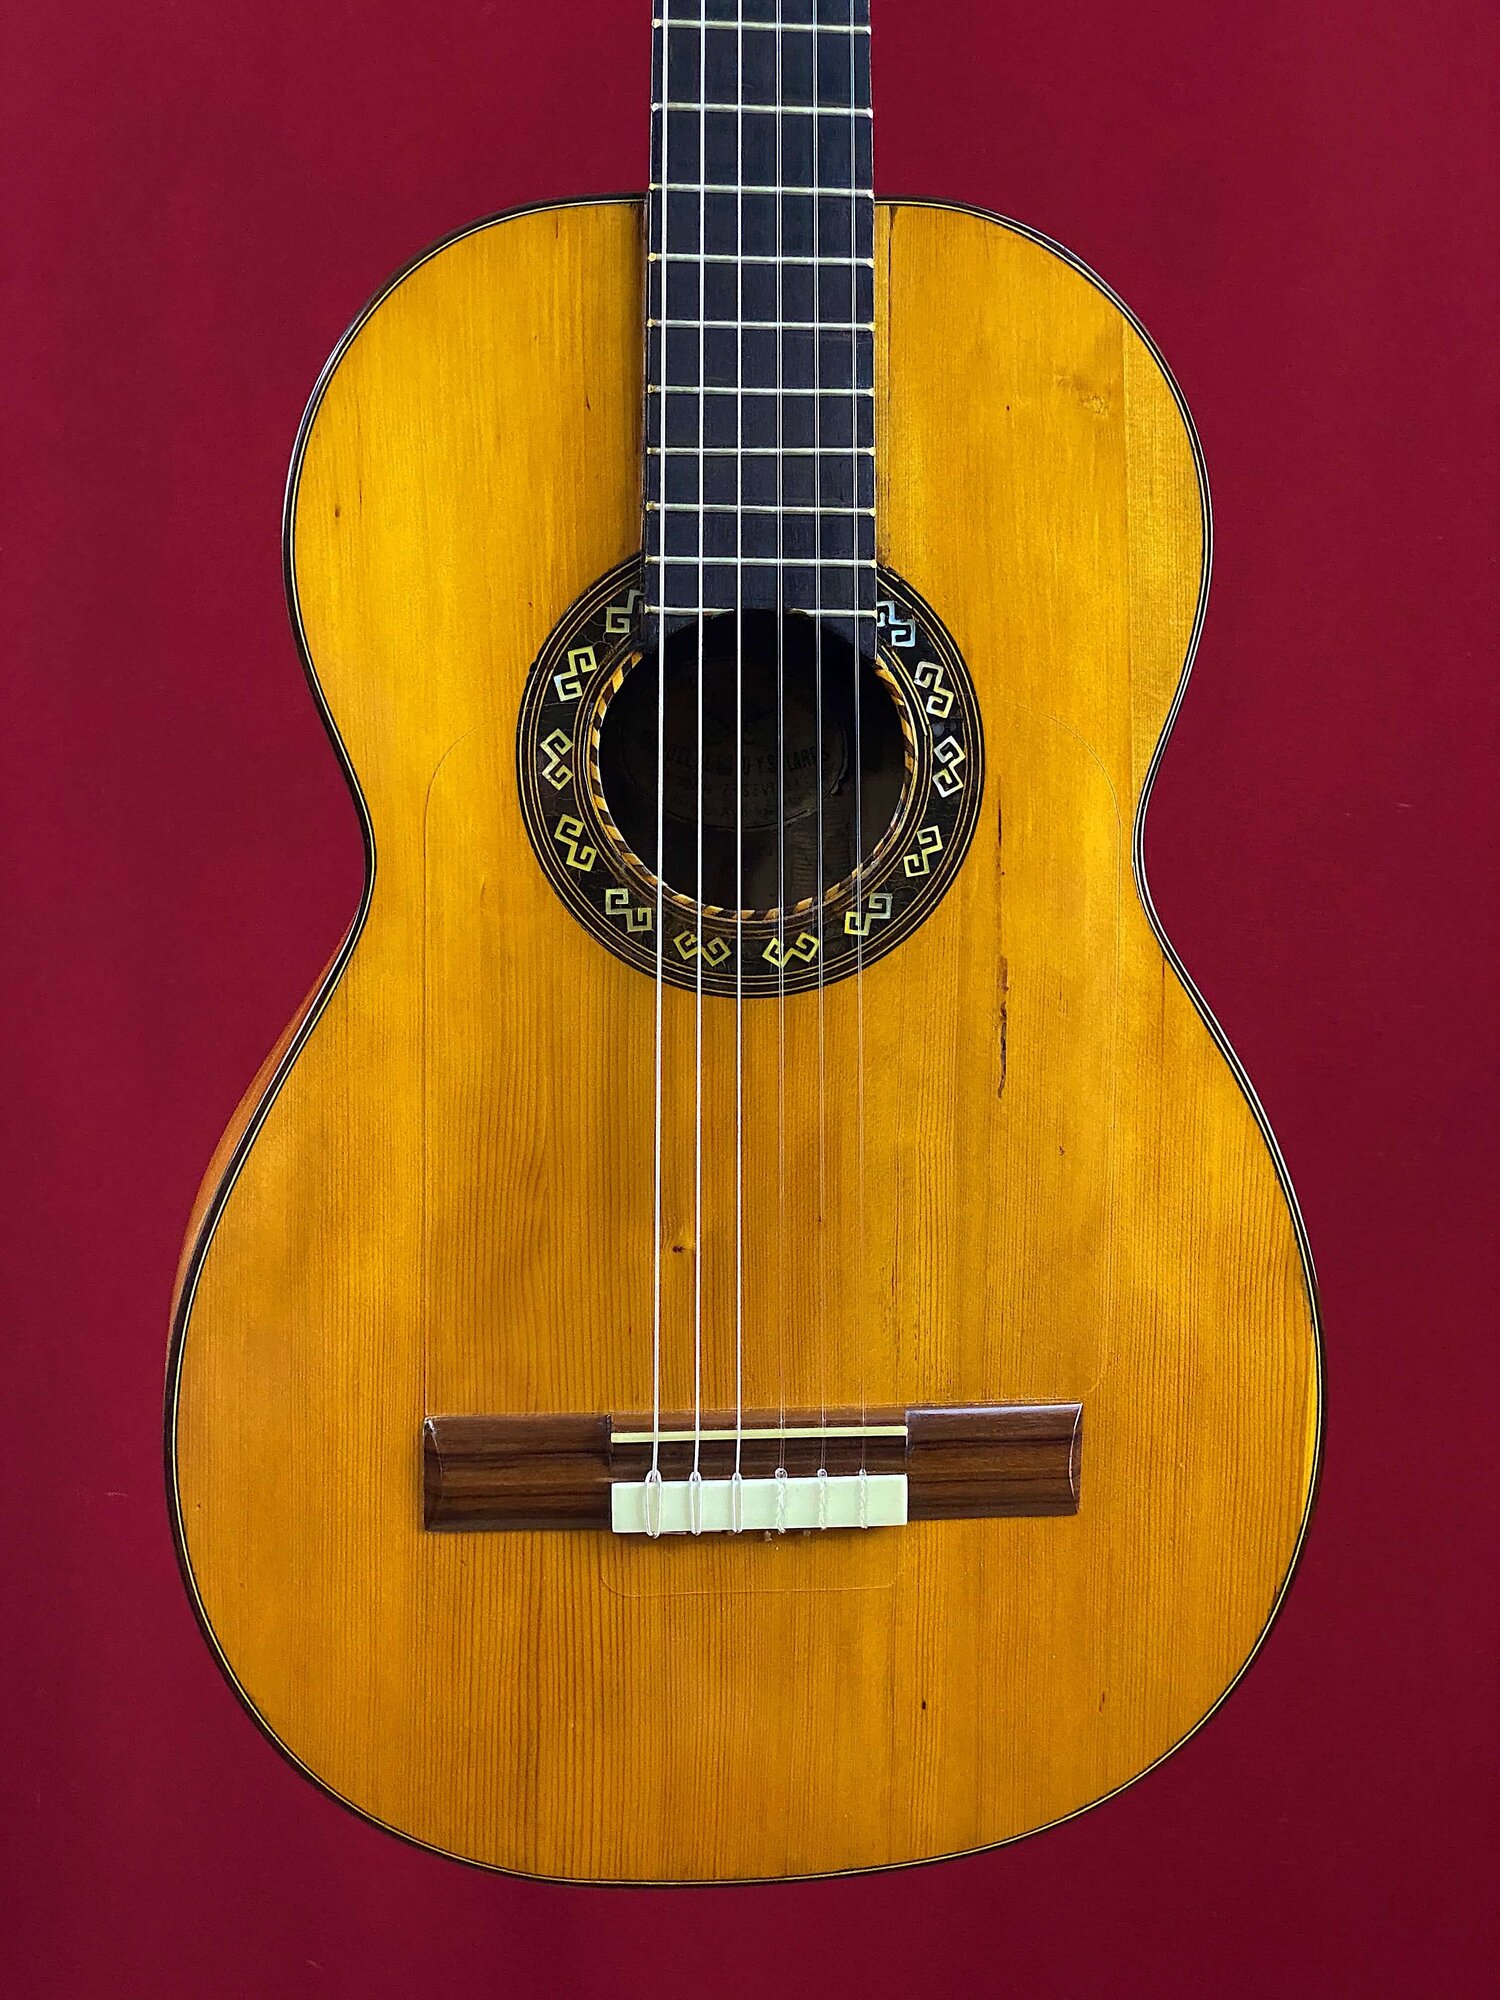 Vorige Onenigheid whisky 1880 Manuel Soto y Solares flamenco guitar